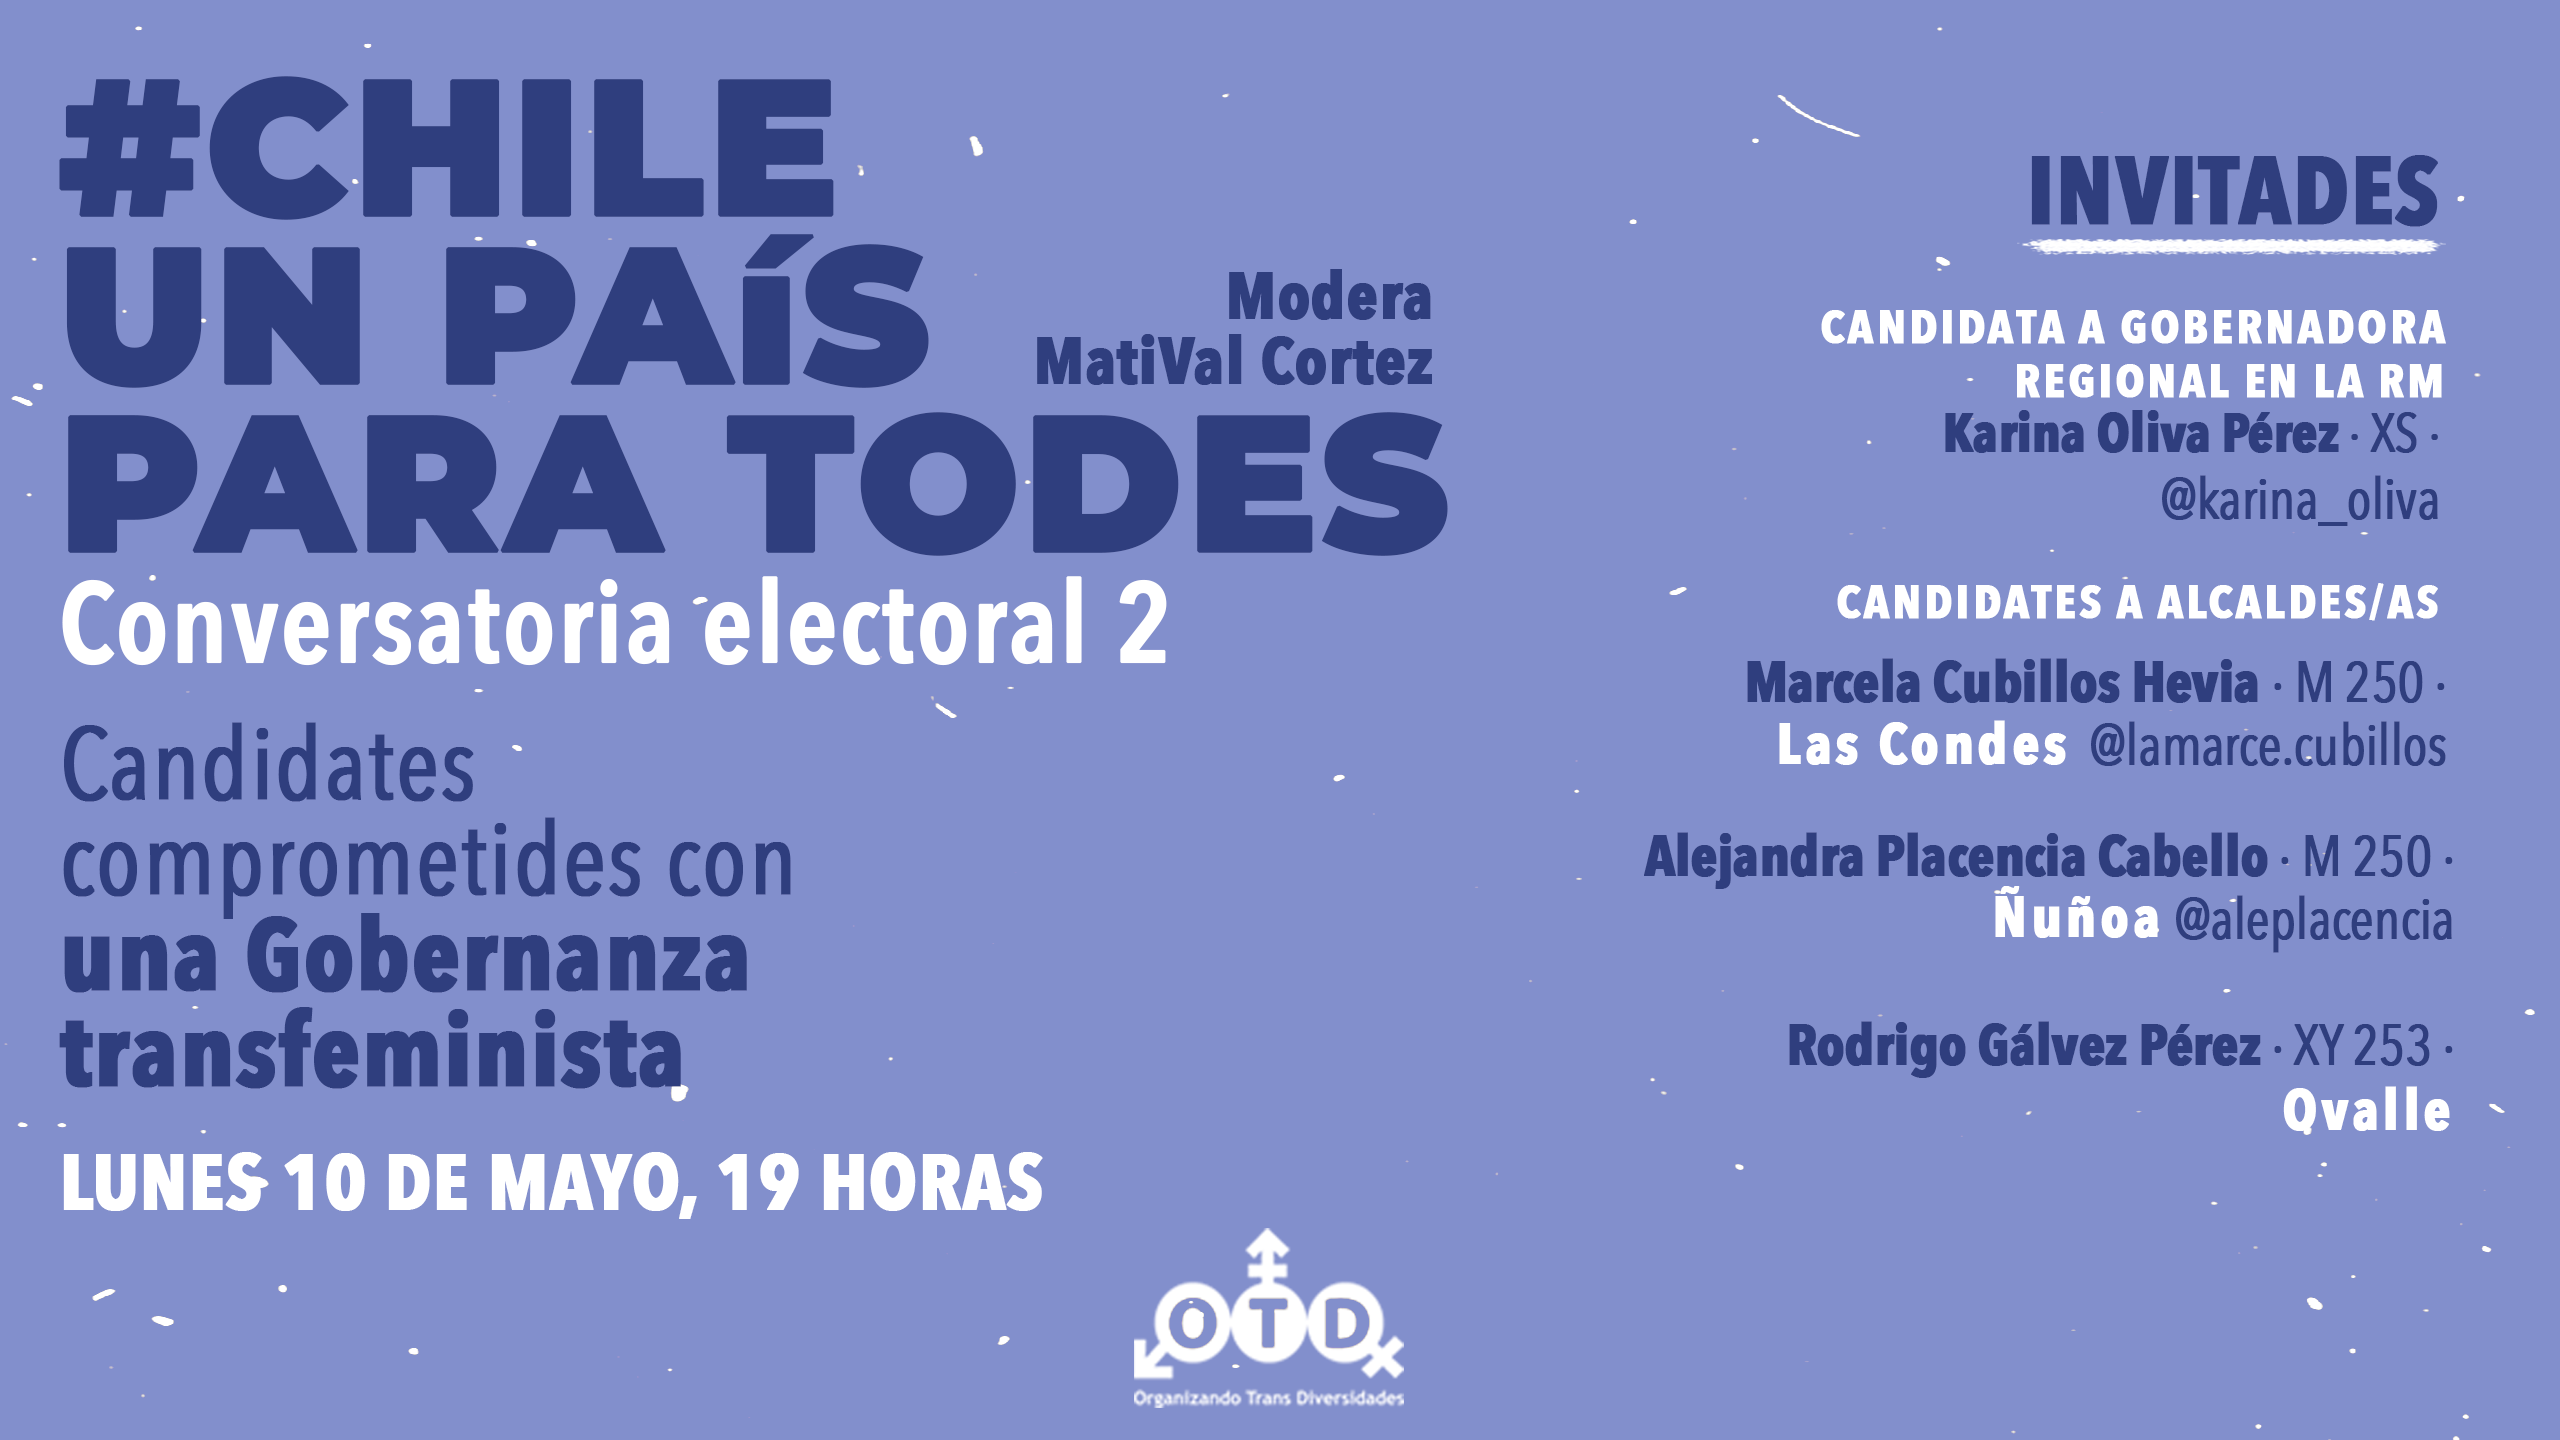 Segunda conversatoria electoral, Chile un país para todes